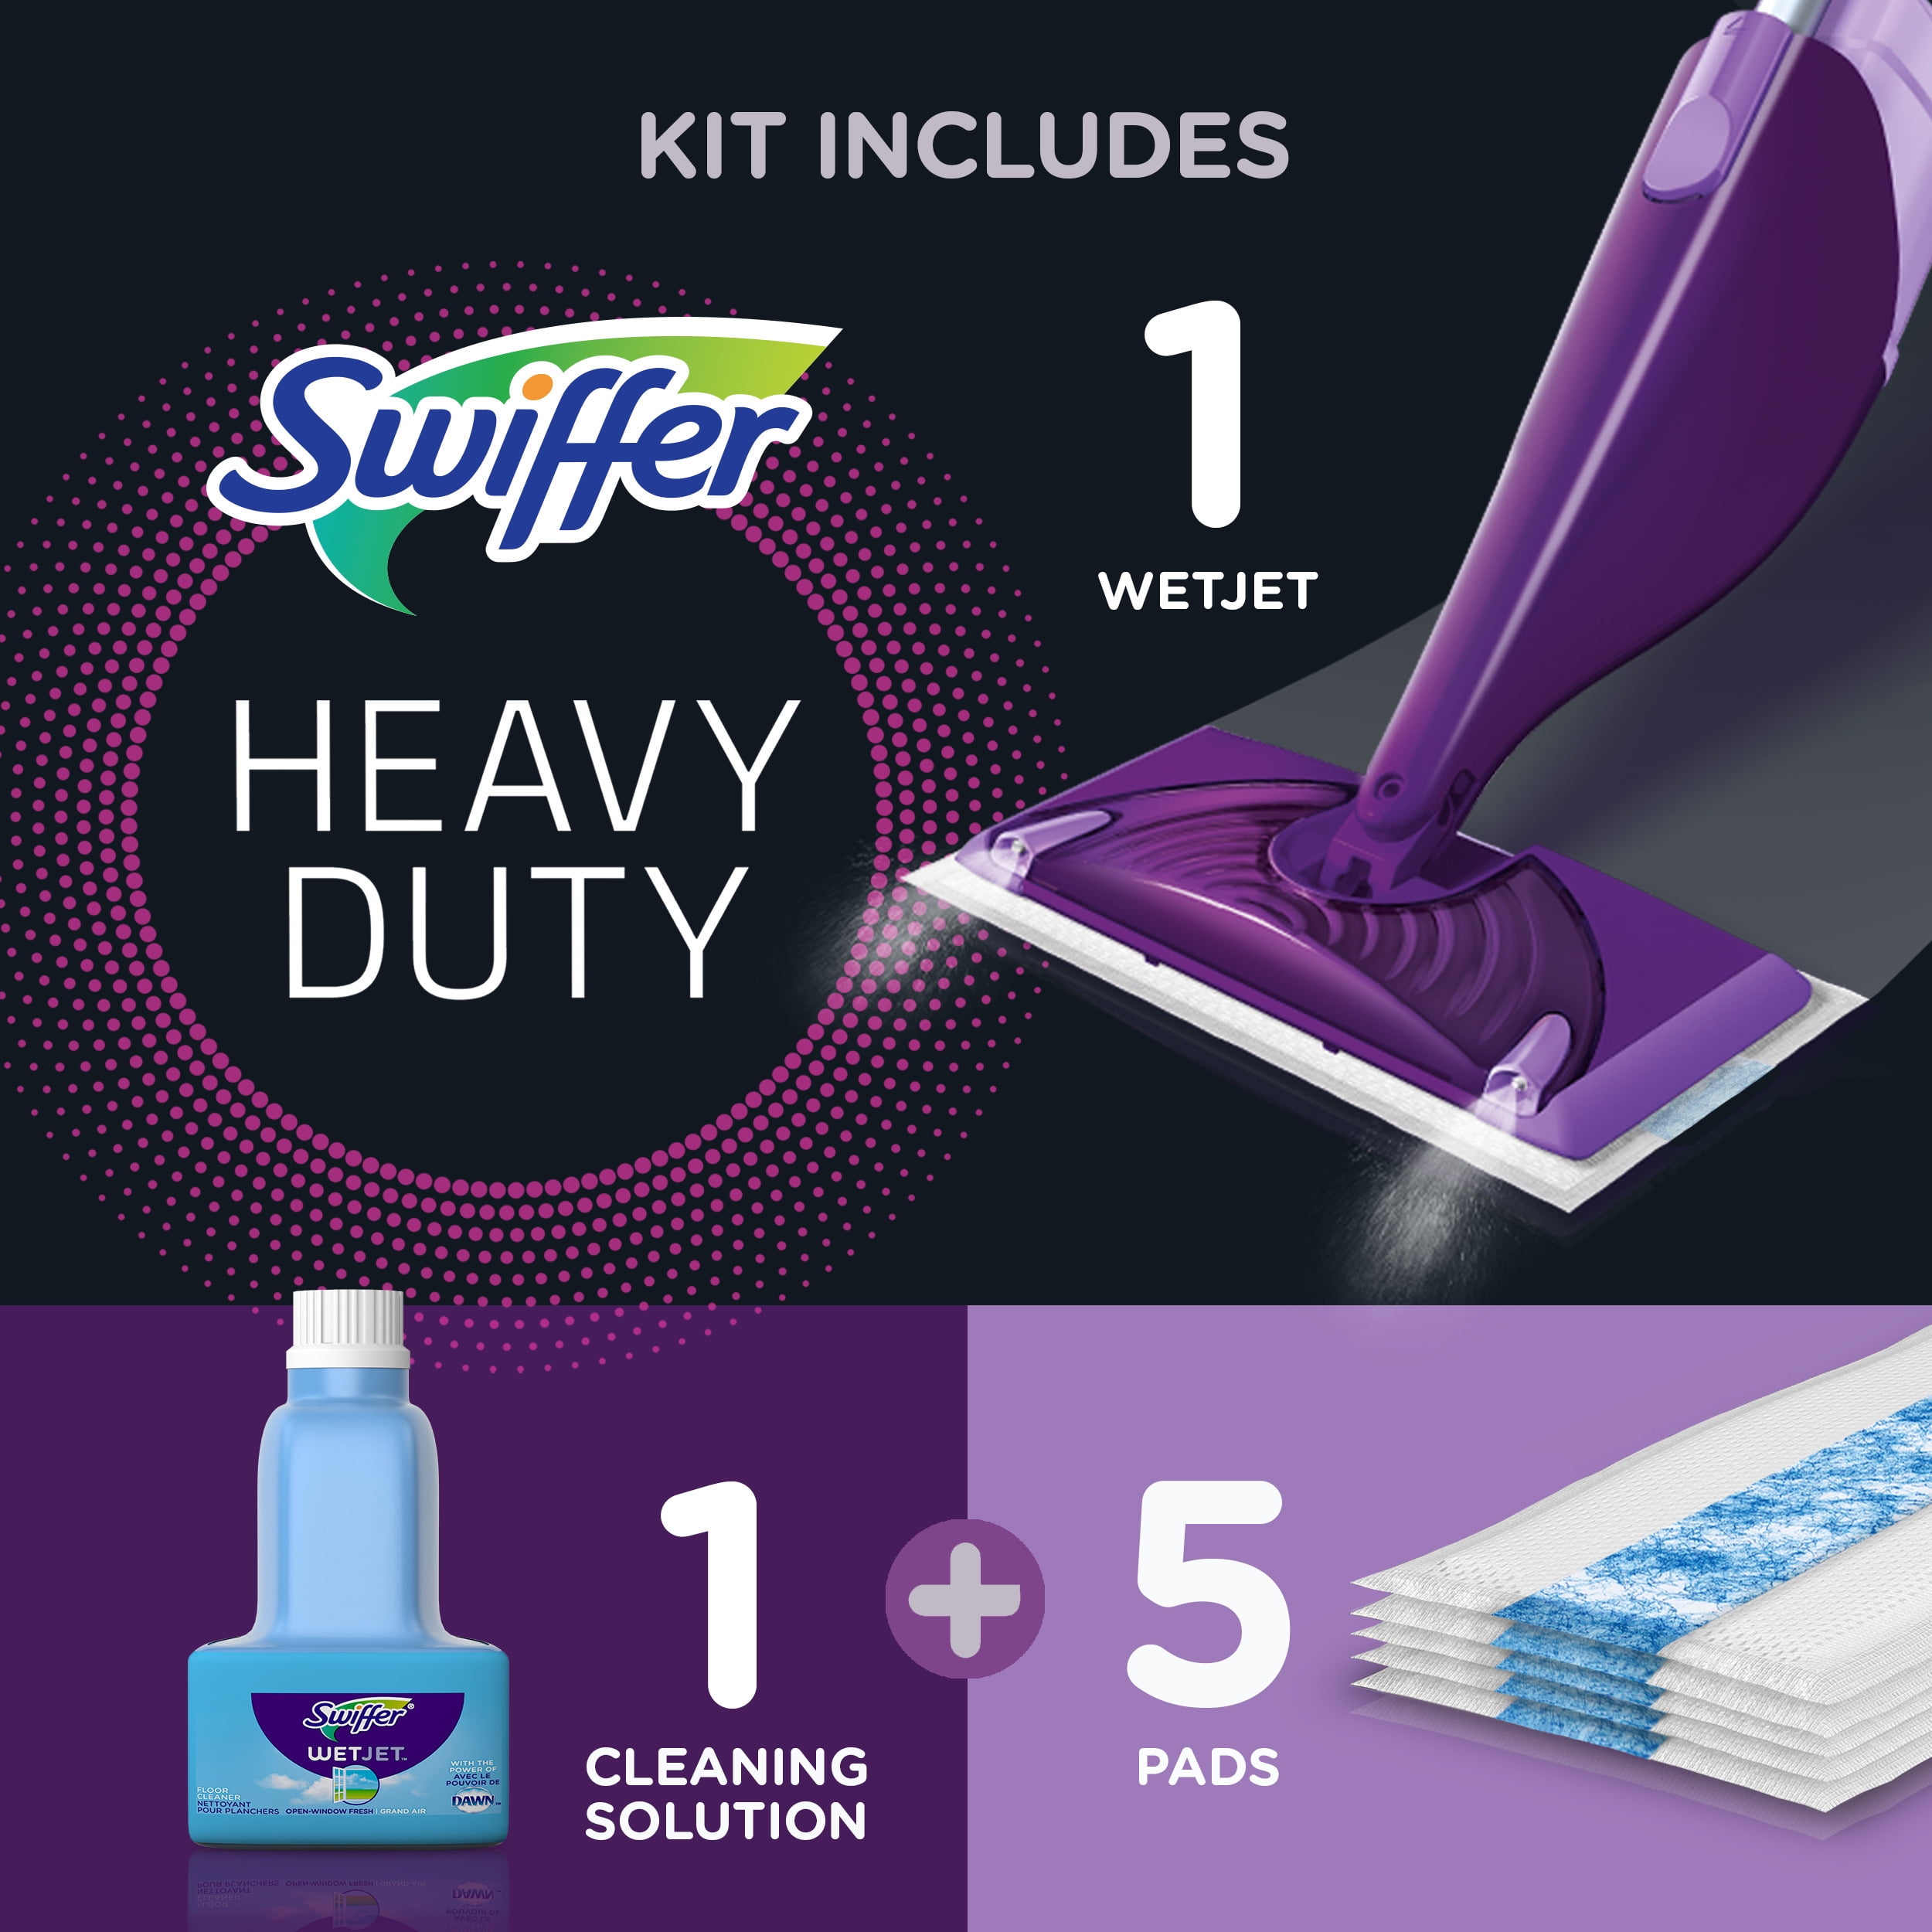 Swiffer WetJet Spray Mop Starter Kit PurpleSilver - Office Depot